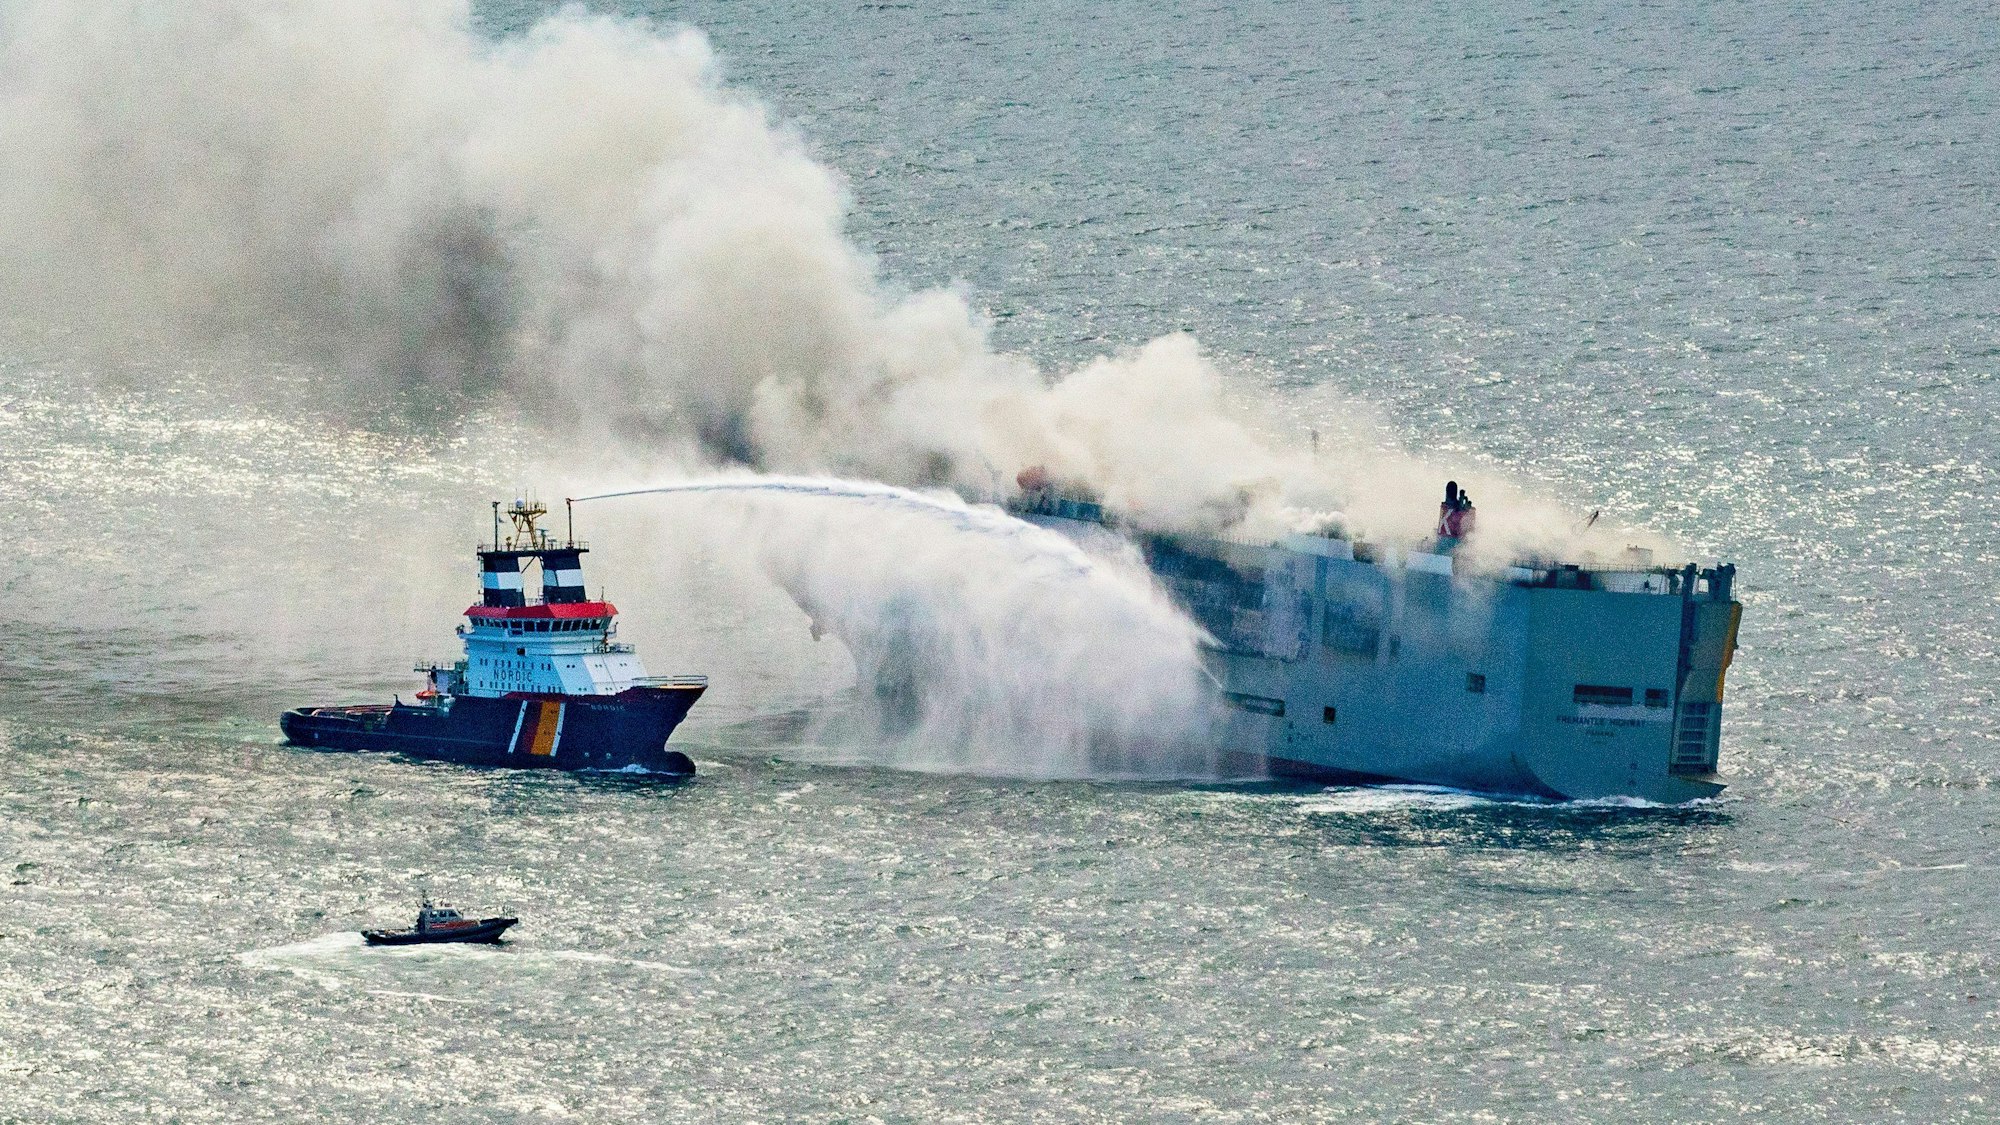 Der deutsche Notschlepper „Nordic“ versucht, den in Brand geratenen Frachter „Fremantle Highway“ in der Nordsee zu löschen. Mehrere Rettungsboote sind in der Nähe des havarierten Schiffs unterwegs.